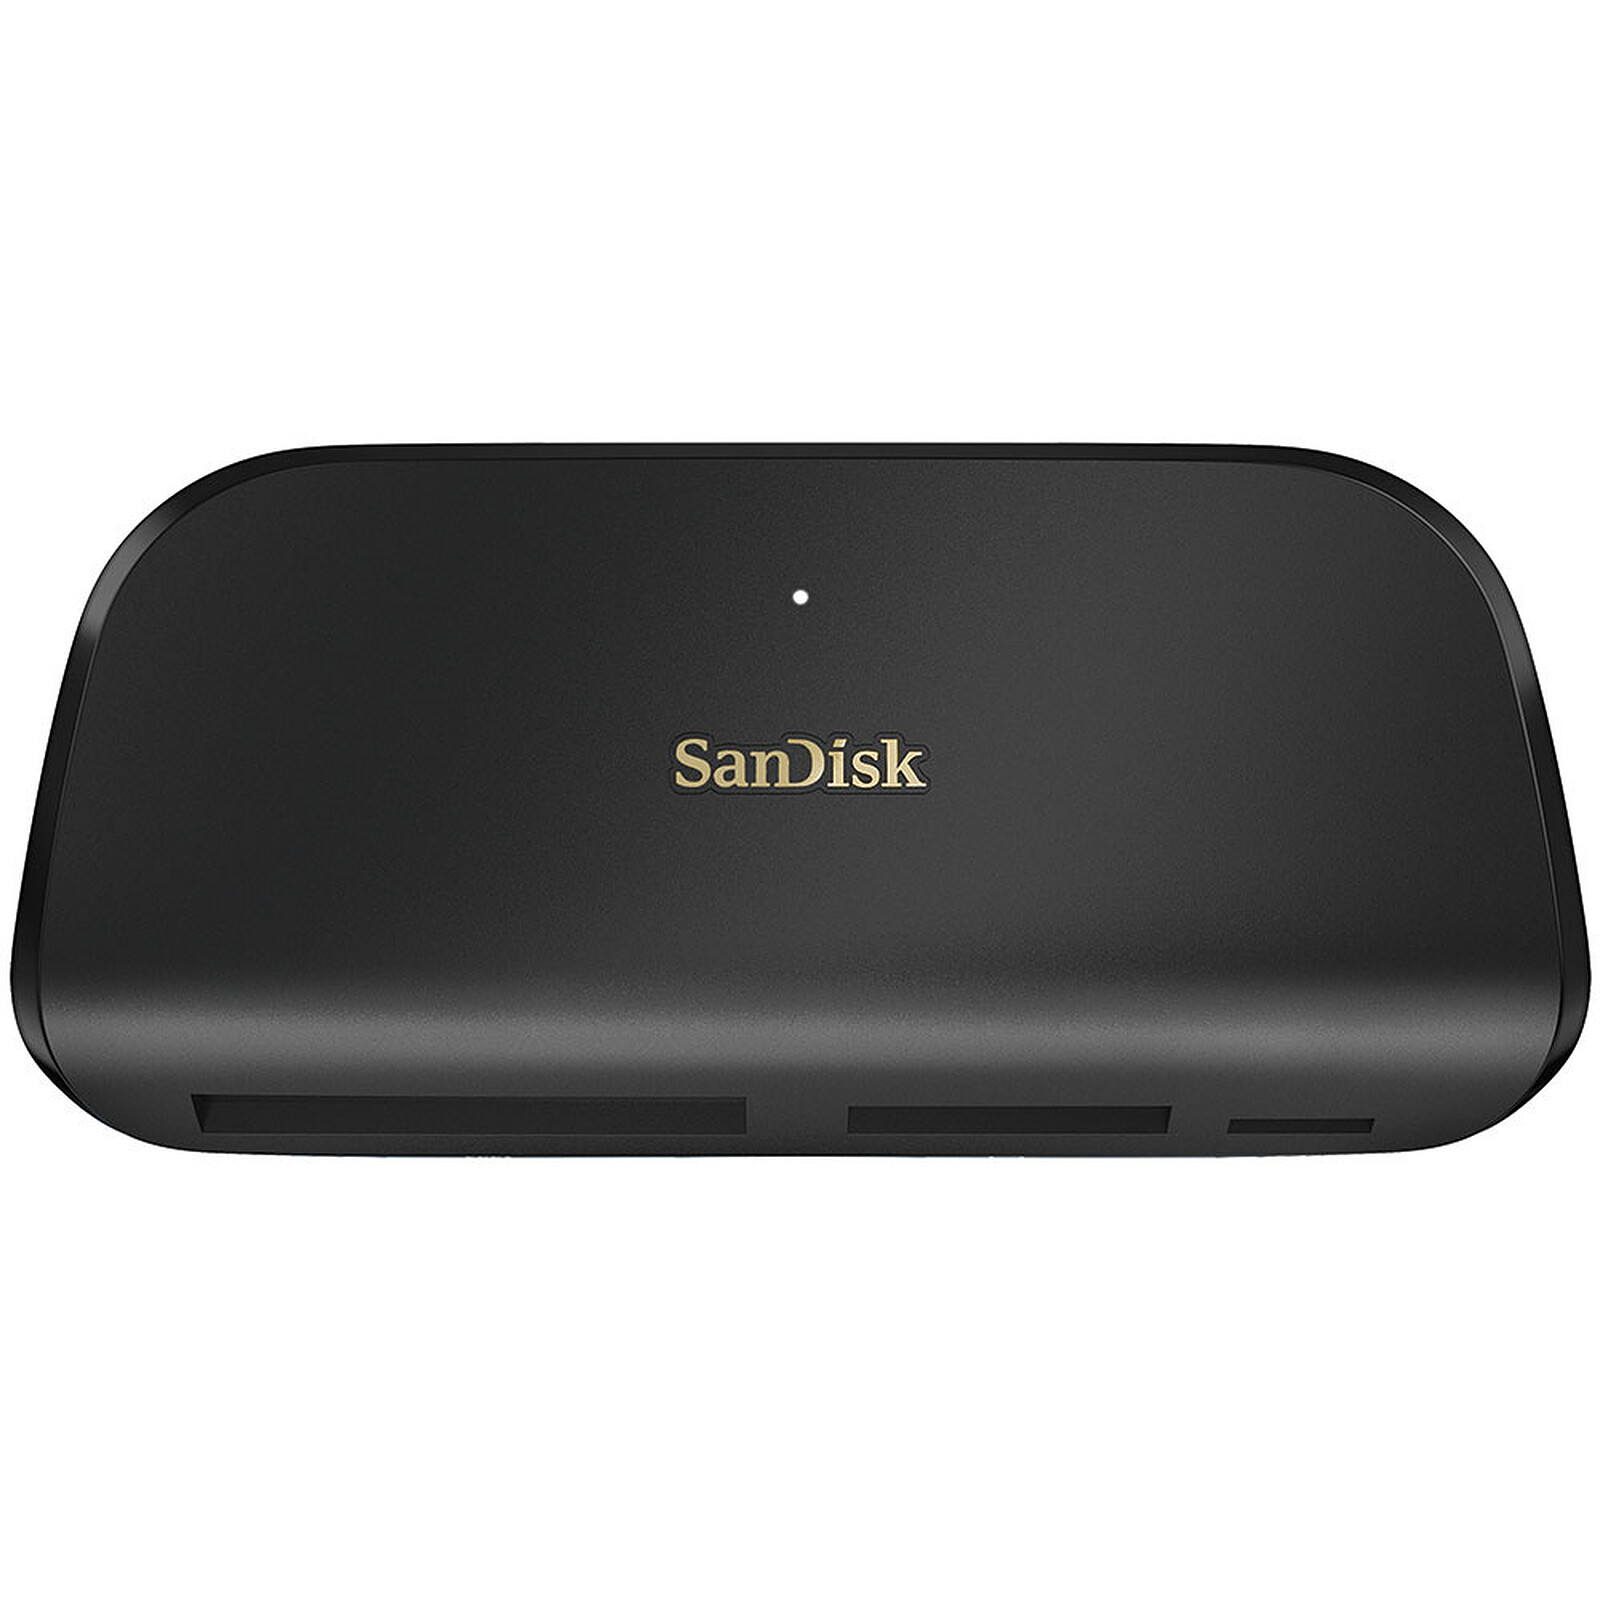 SanDisk Lecteur/Graveur Extreme PRO SD UHS-II - Lecteur carte mémoire -  Garantie 3 ans LDLC